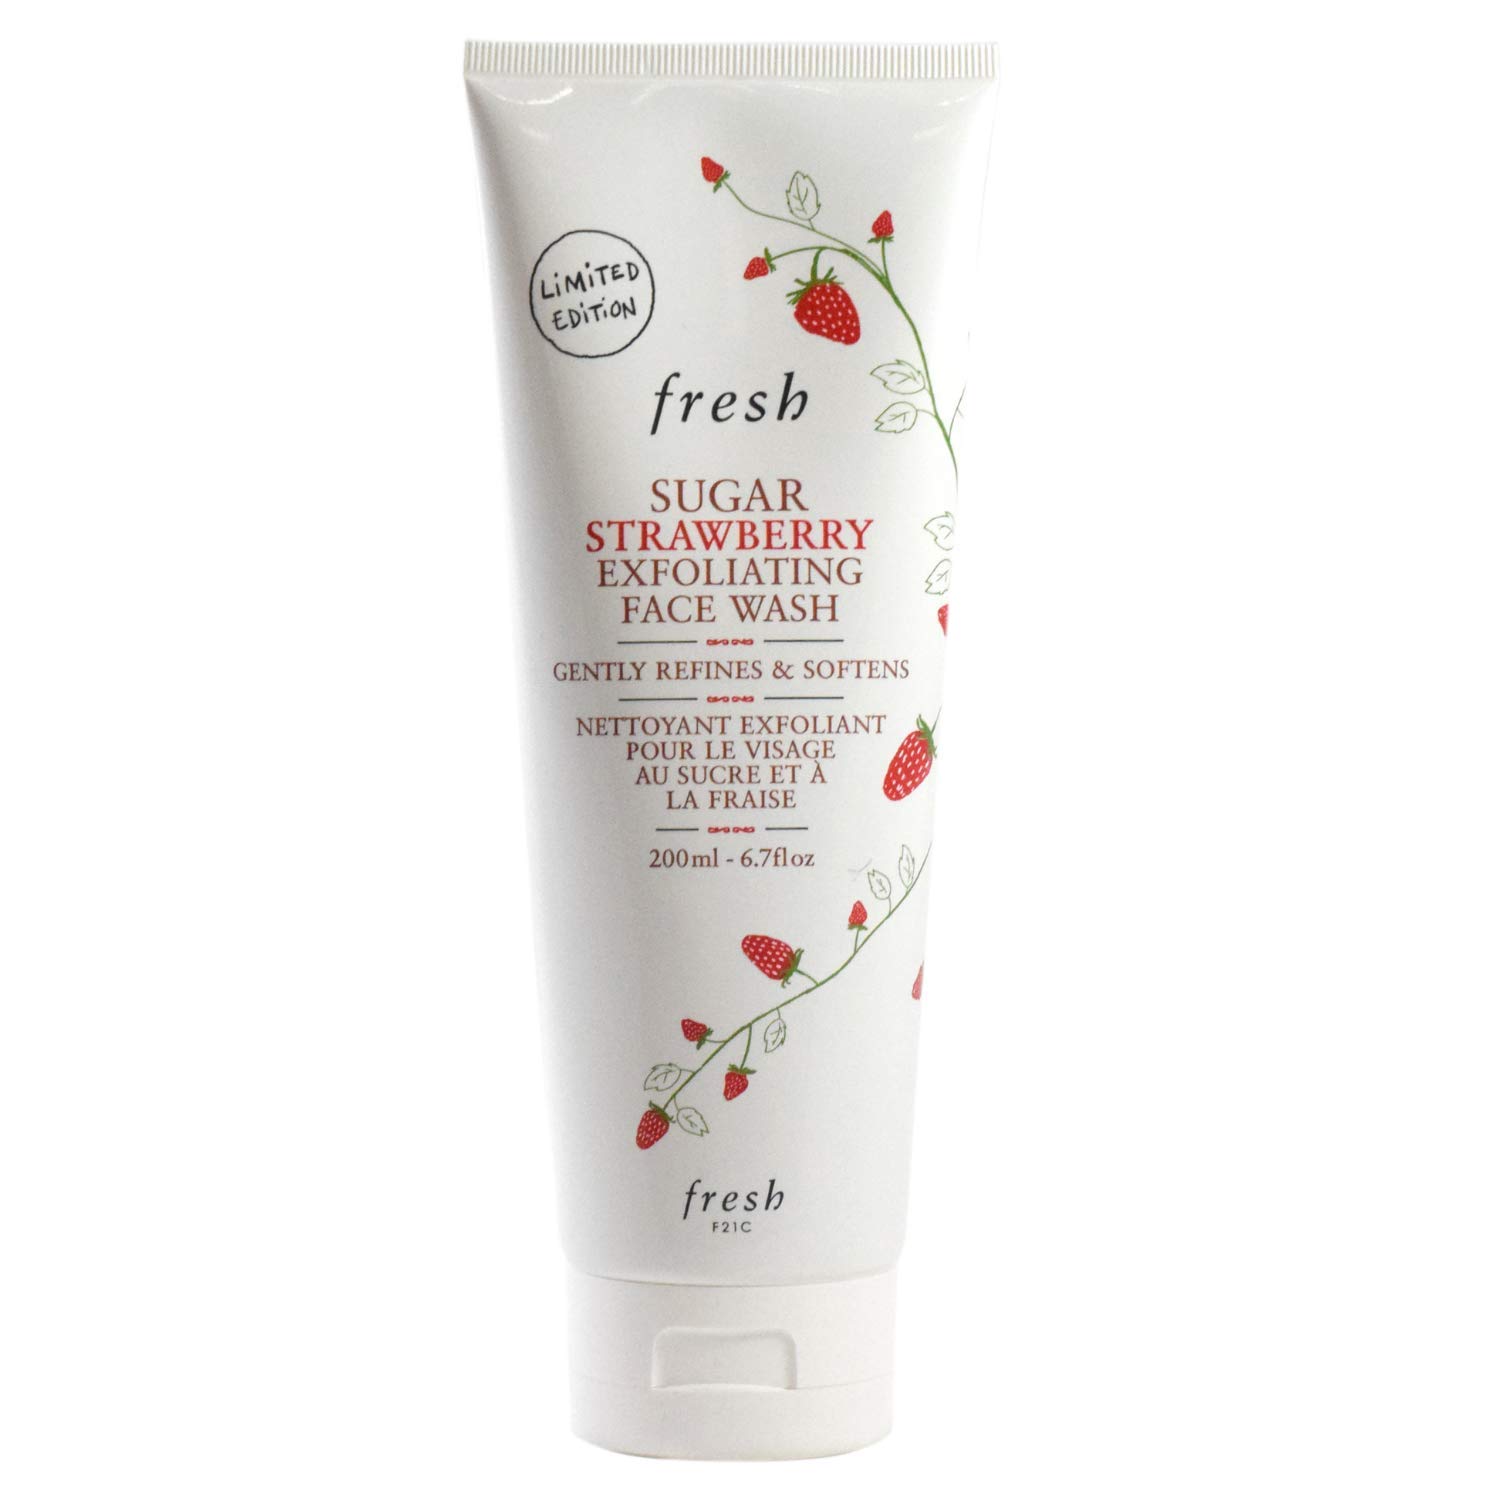 Sugar Strawberry Exfoliating Face Wash - fresh